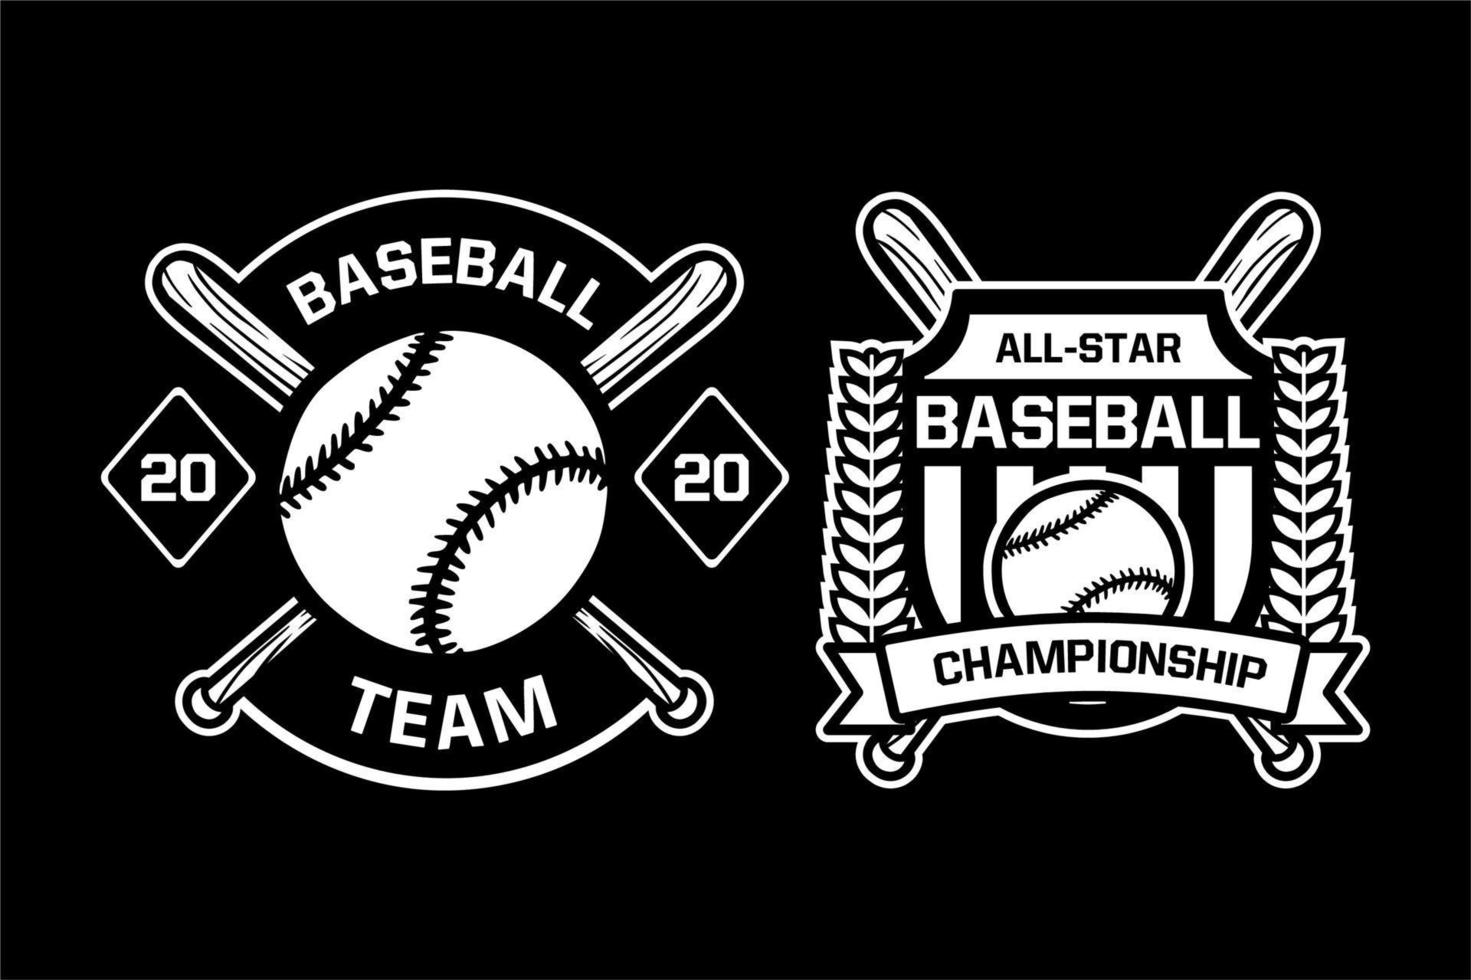 baseball lag mästerskap badge logotyp emblem mall samling svart och vitt vektor